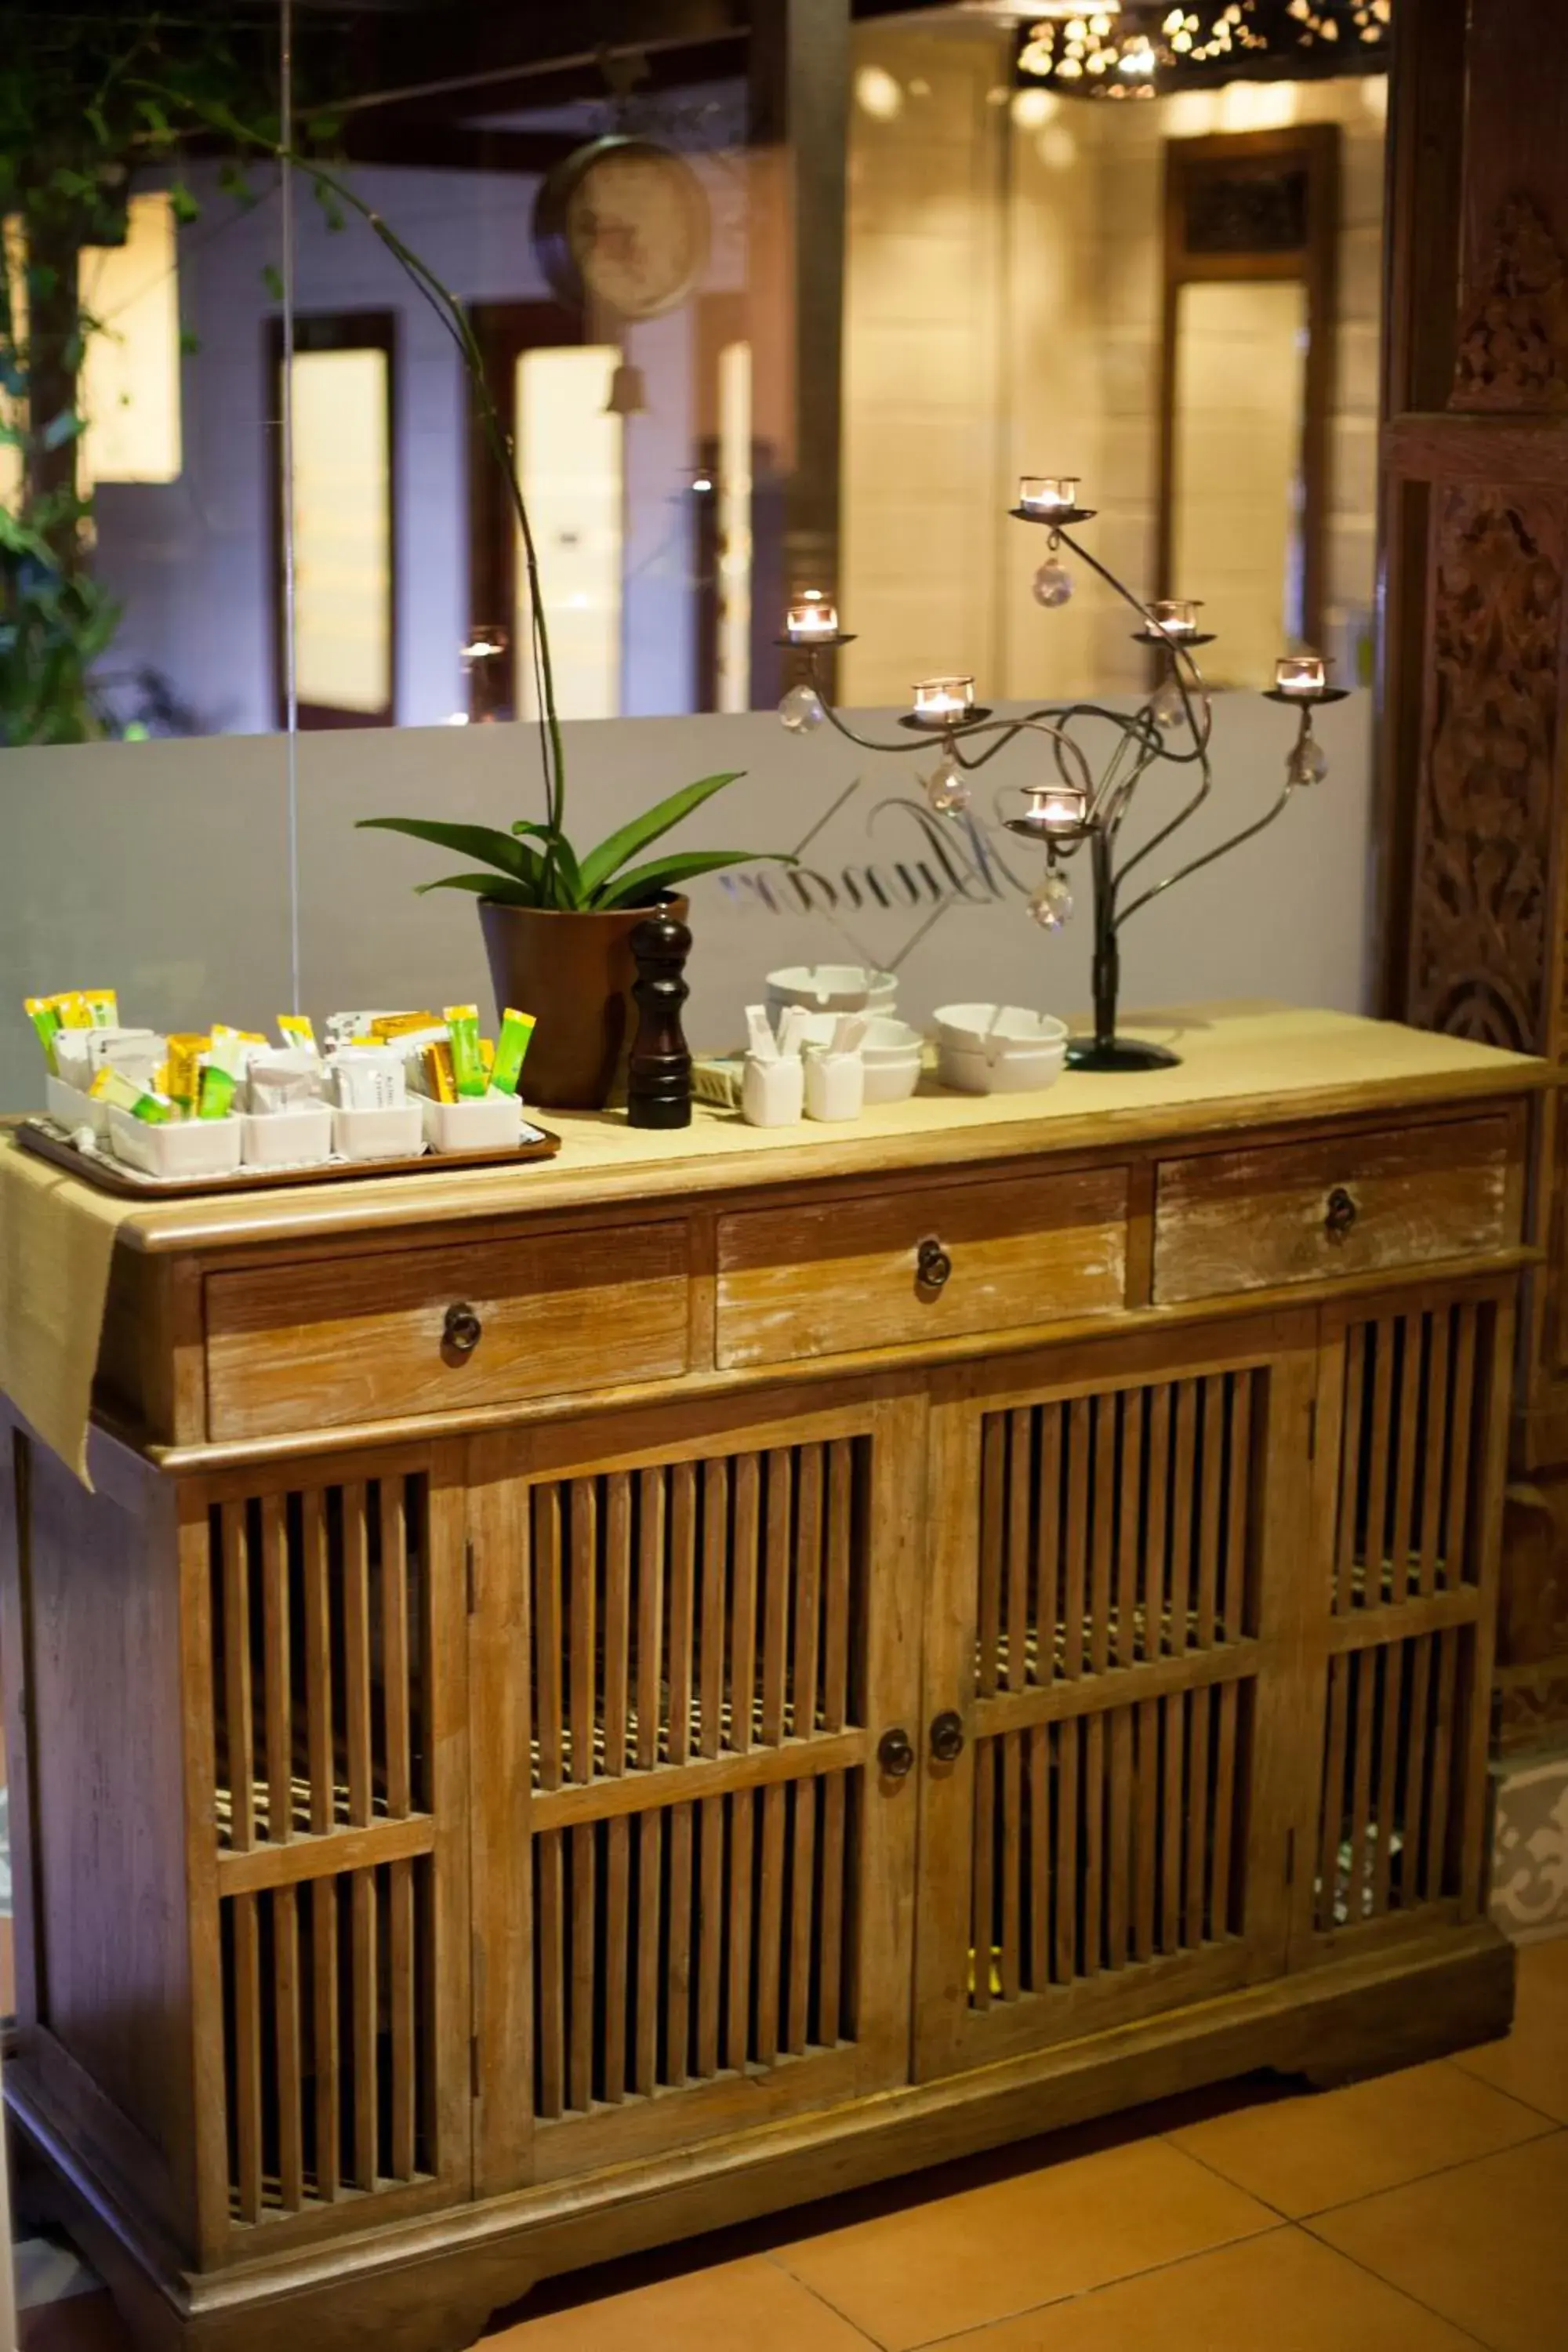 Coffee/tea facilities, Bathroom in Munari Resort and Spa Ubud